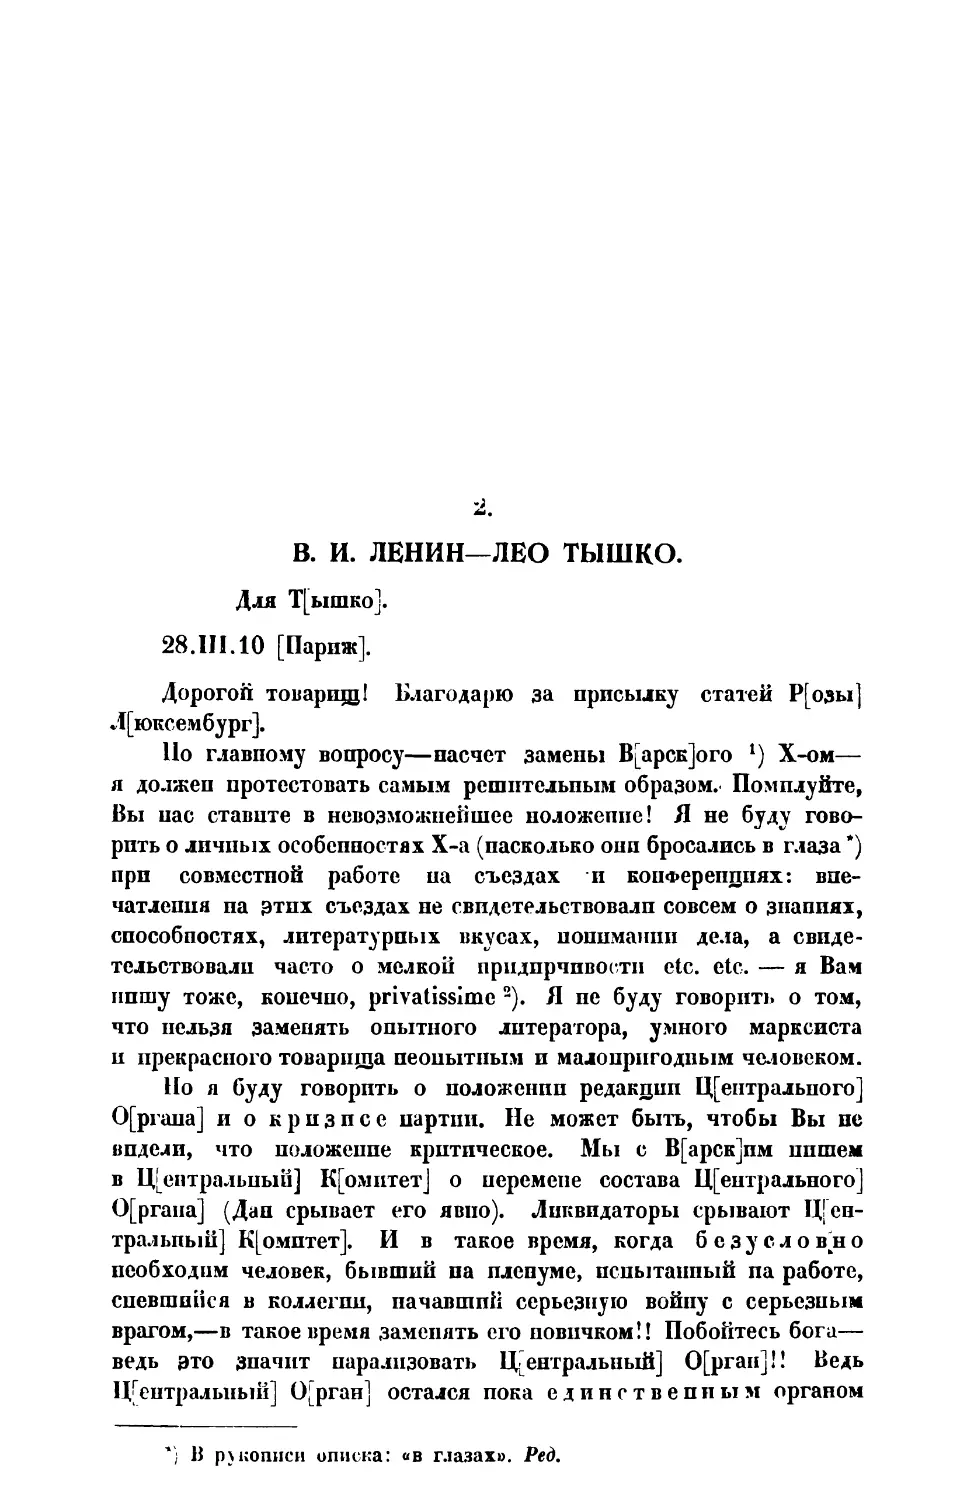 2. В. И. Ленин. — Письмо Лео Тышко от 28 III 1910 г.